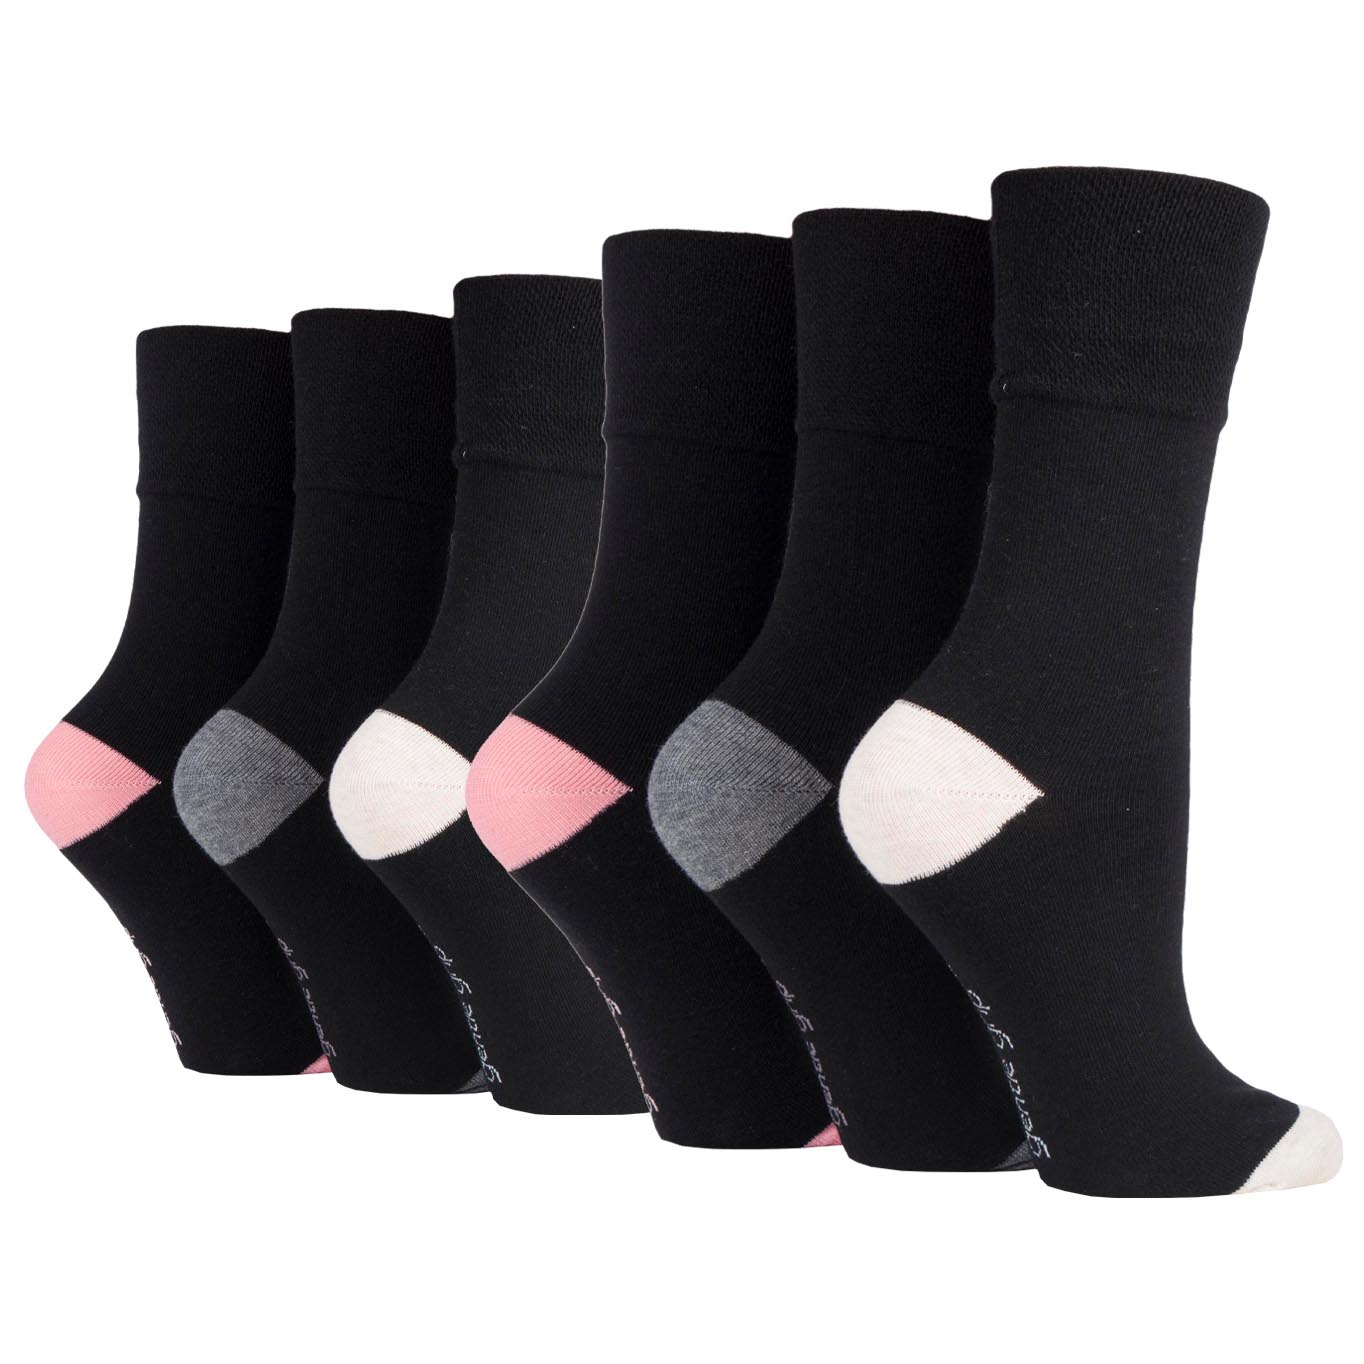 6 Pairs Ladies Gentle Grip Heel & Toe Cotton Socks - Black with Grey/Dusky Pink/Cream